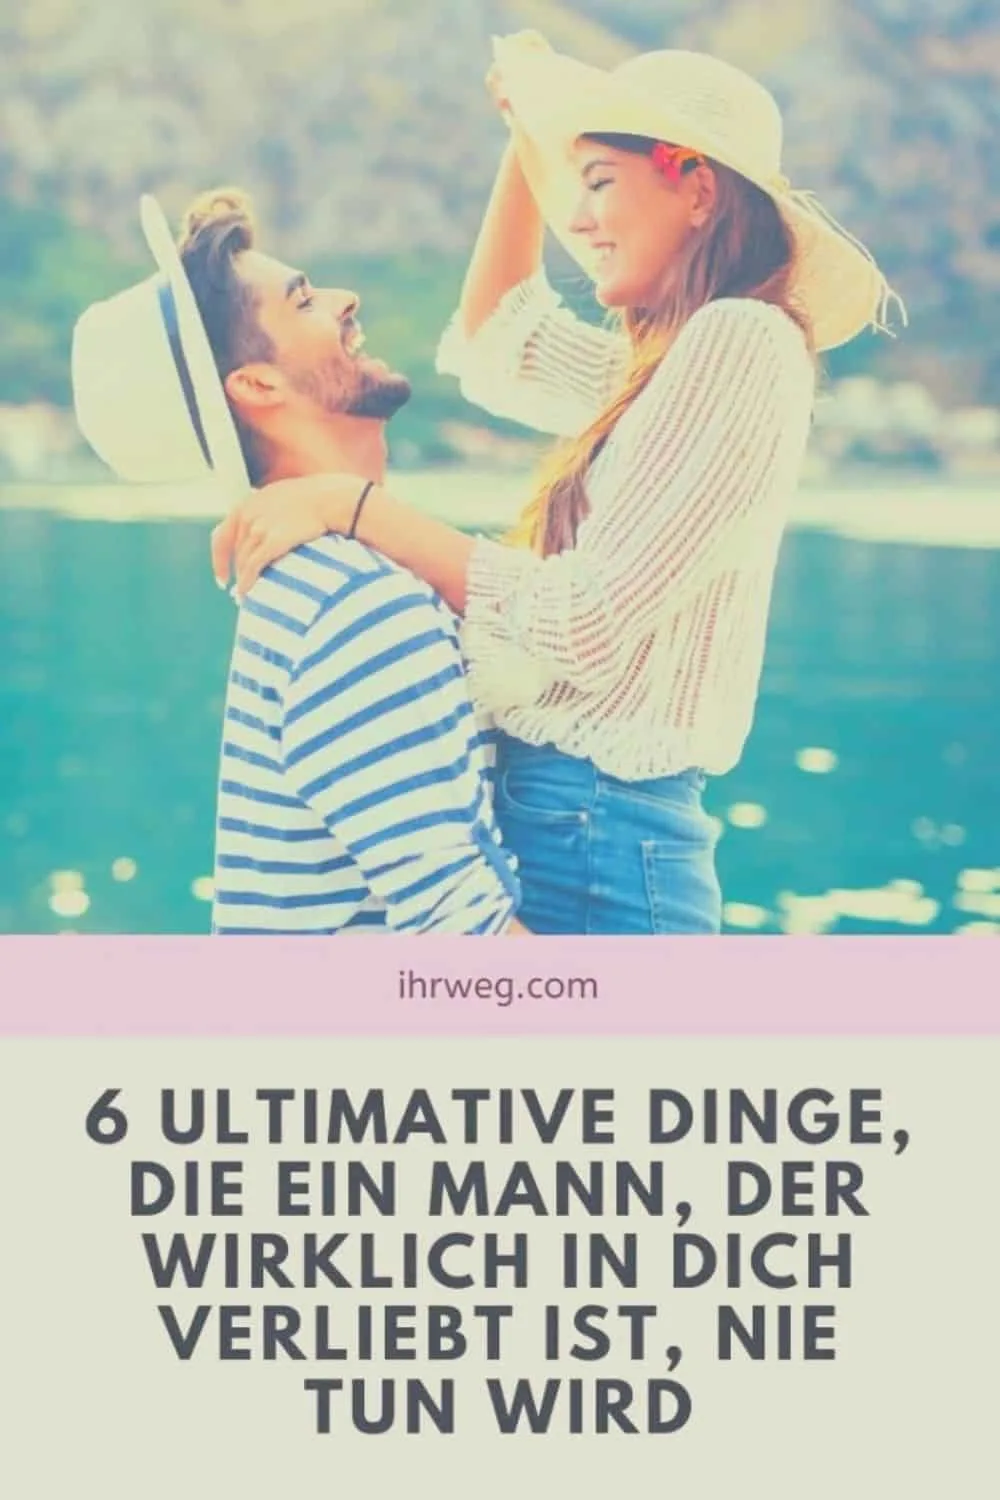 6 Ultimative Dinge, Die Ein Mann, Der Wirklich In Dich Verliebt Ist, Nie Tun Wird